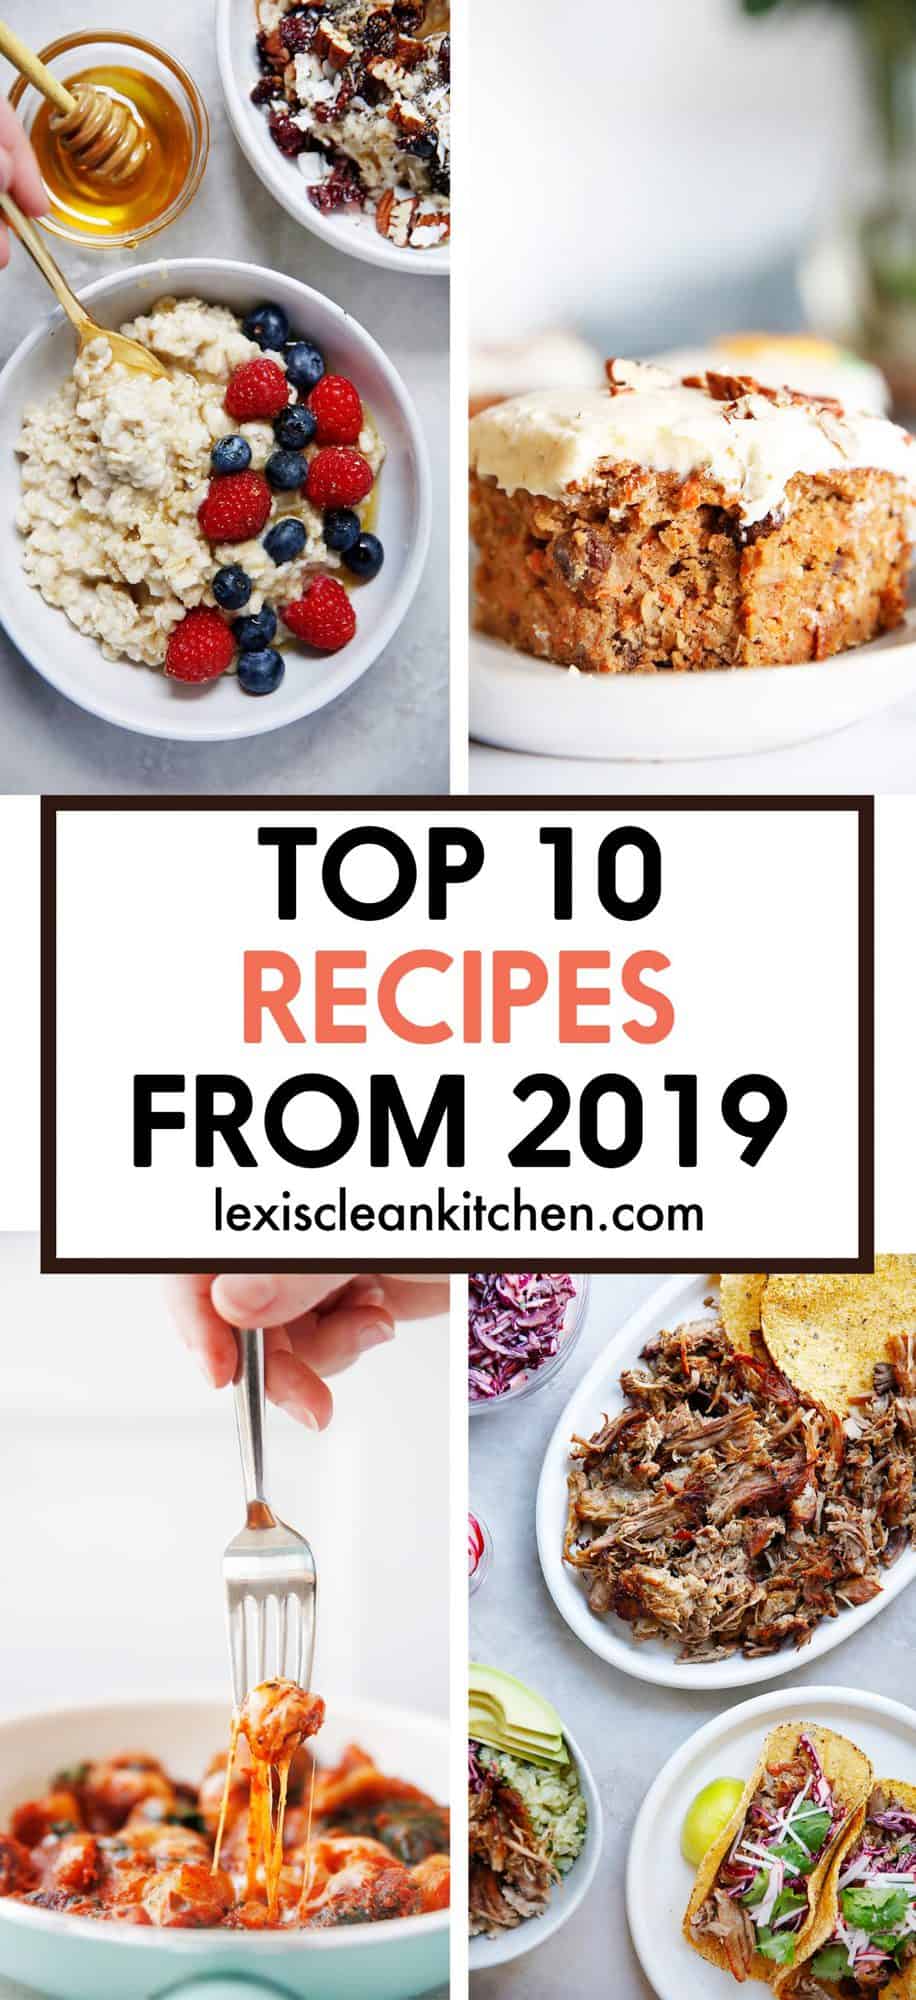 Top 10 Recipes of 2019